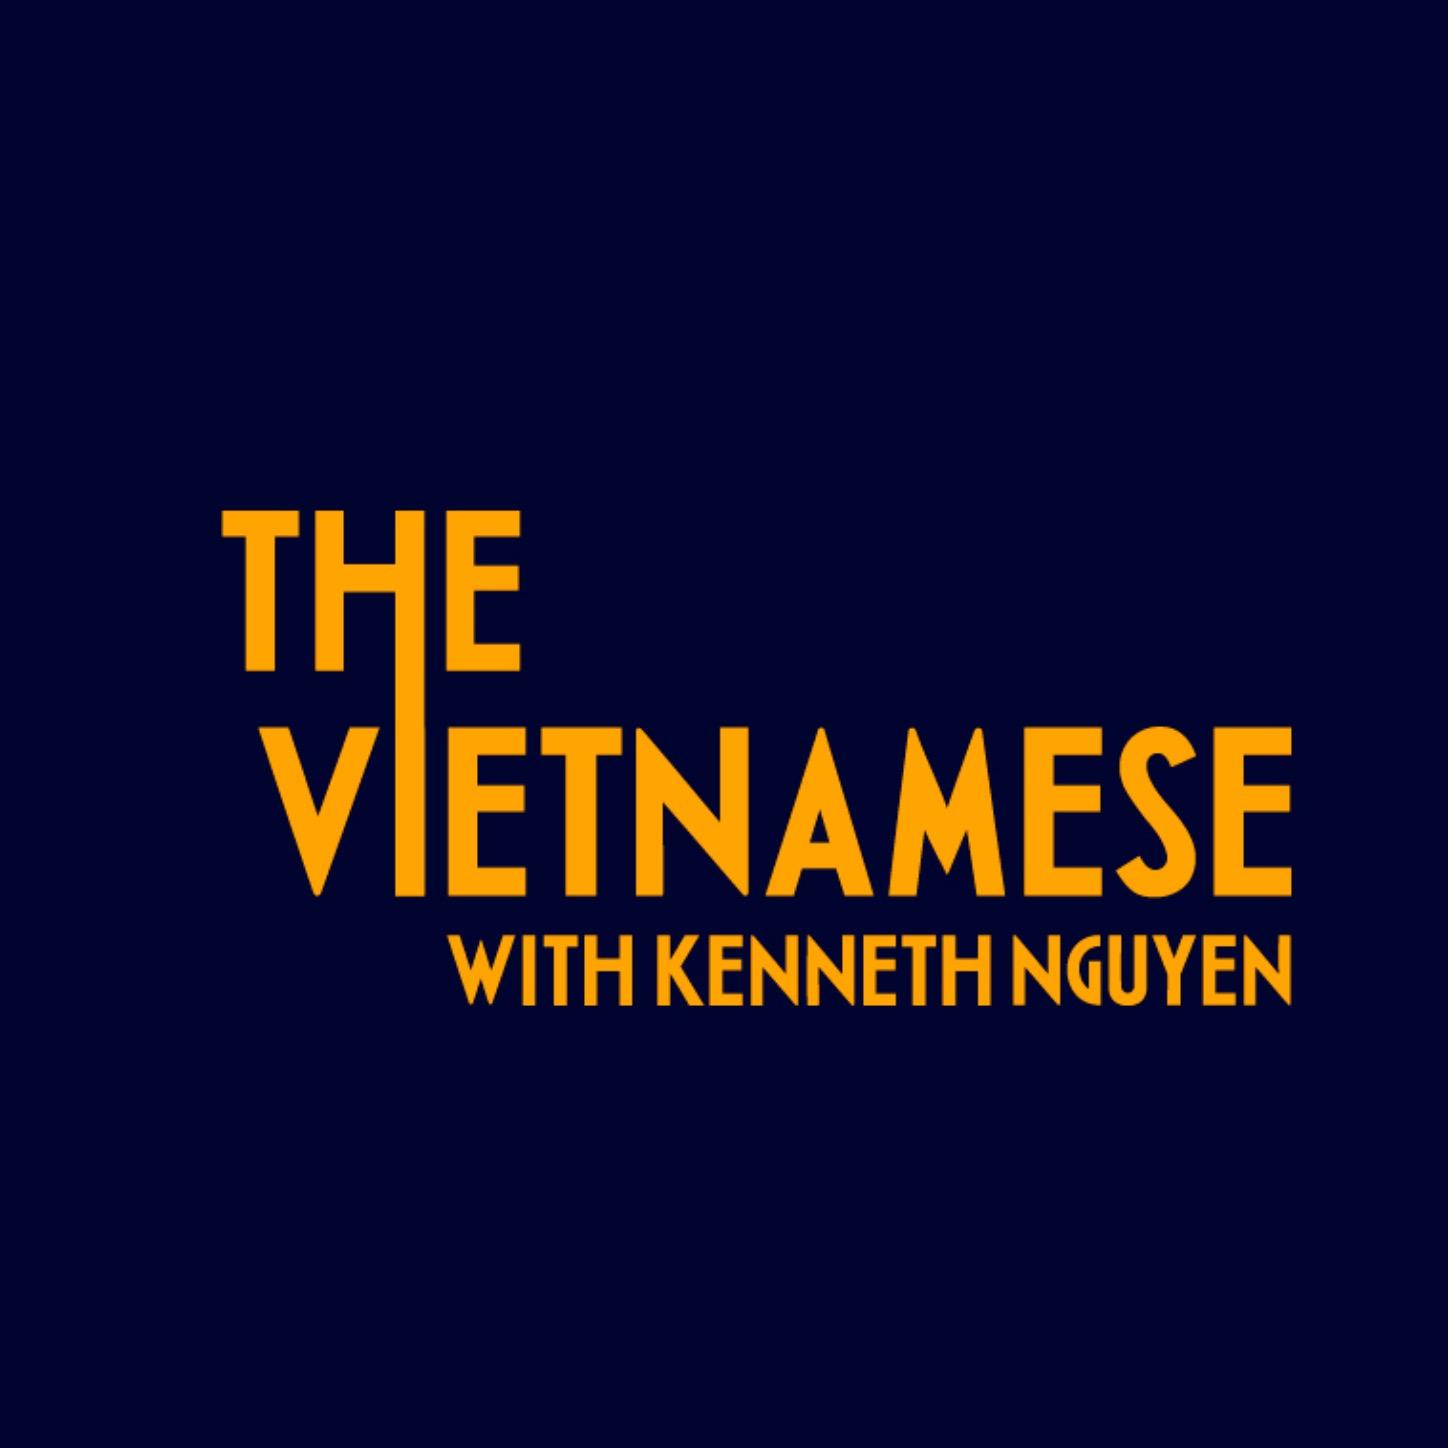 Kenneth Nguyen: Kenneth Nguyen chính là một trong những gương mặt trẻ tiêu biểu của giới trẻ Việt Nam. Anh đã trở thành một trong những streamer nổi tiếng và được yêu thích nhất trên nền tảng Tiktok với hàng triệu lượt xem. Cùng khám phá những hình ảnh nghệ thuật và sinh động nhất từ Kenneth Nguyen để hiểu thêm về tài năng và sự nổi tiếng của anh ta.